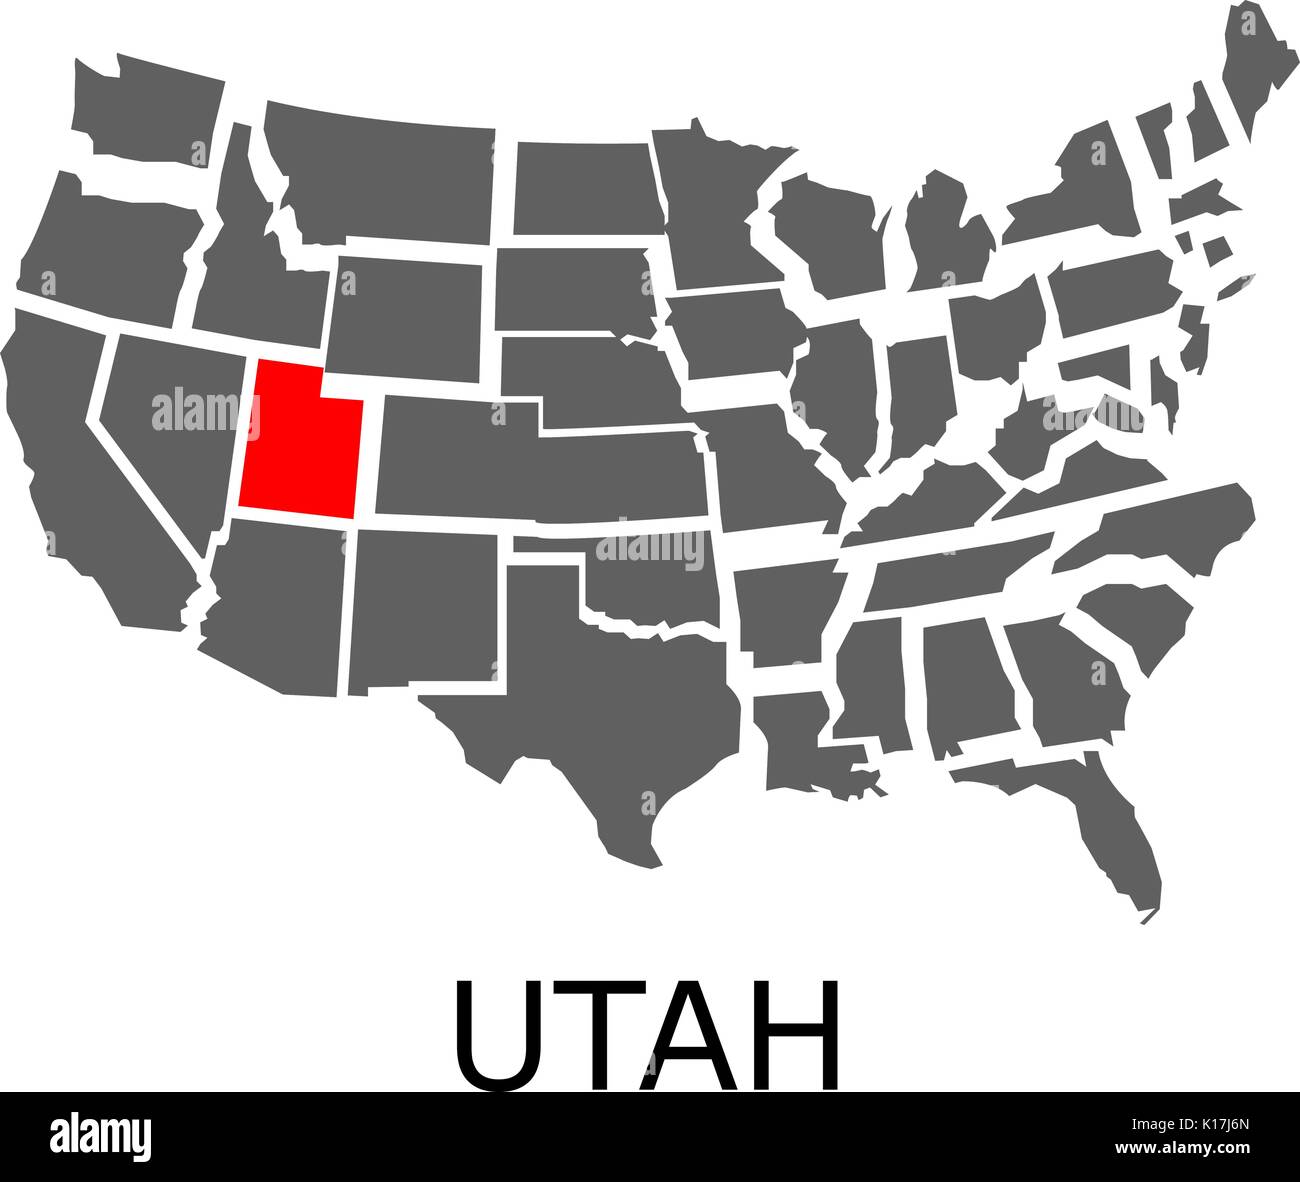 Al confine con la mappa degli Stati Uniti con lo stato dello Utah contrassegnati con il colore rosso. Illustrazione Vettoriale